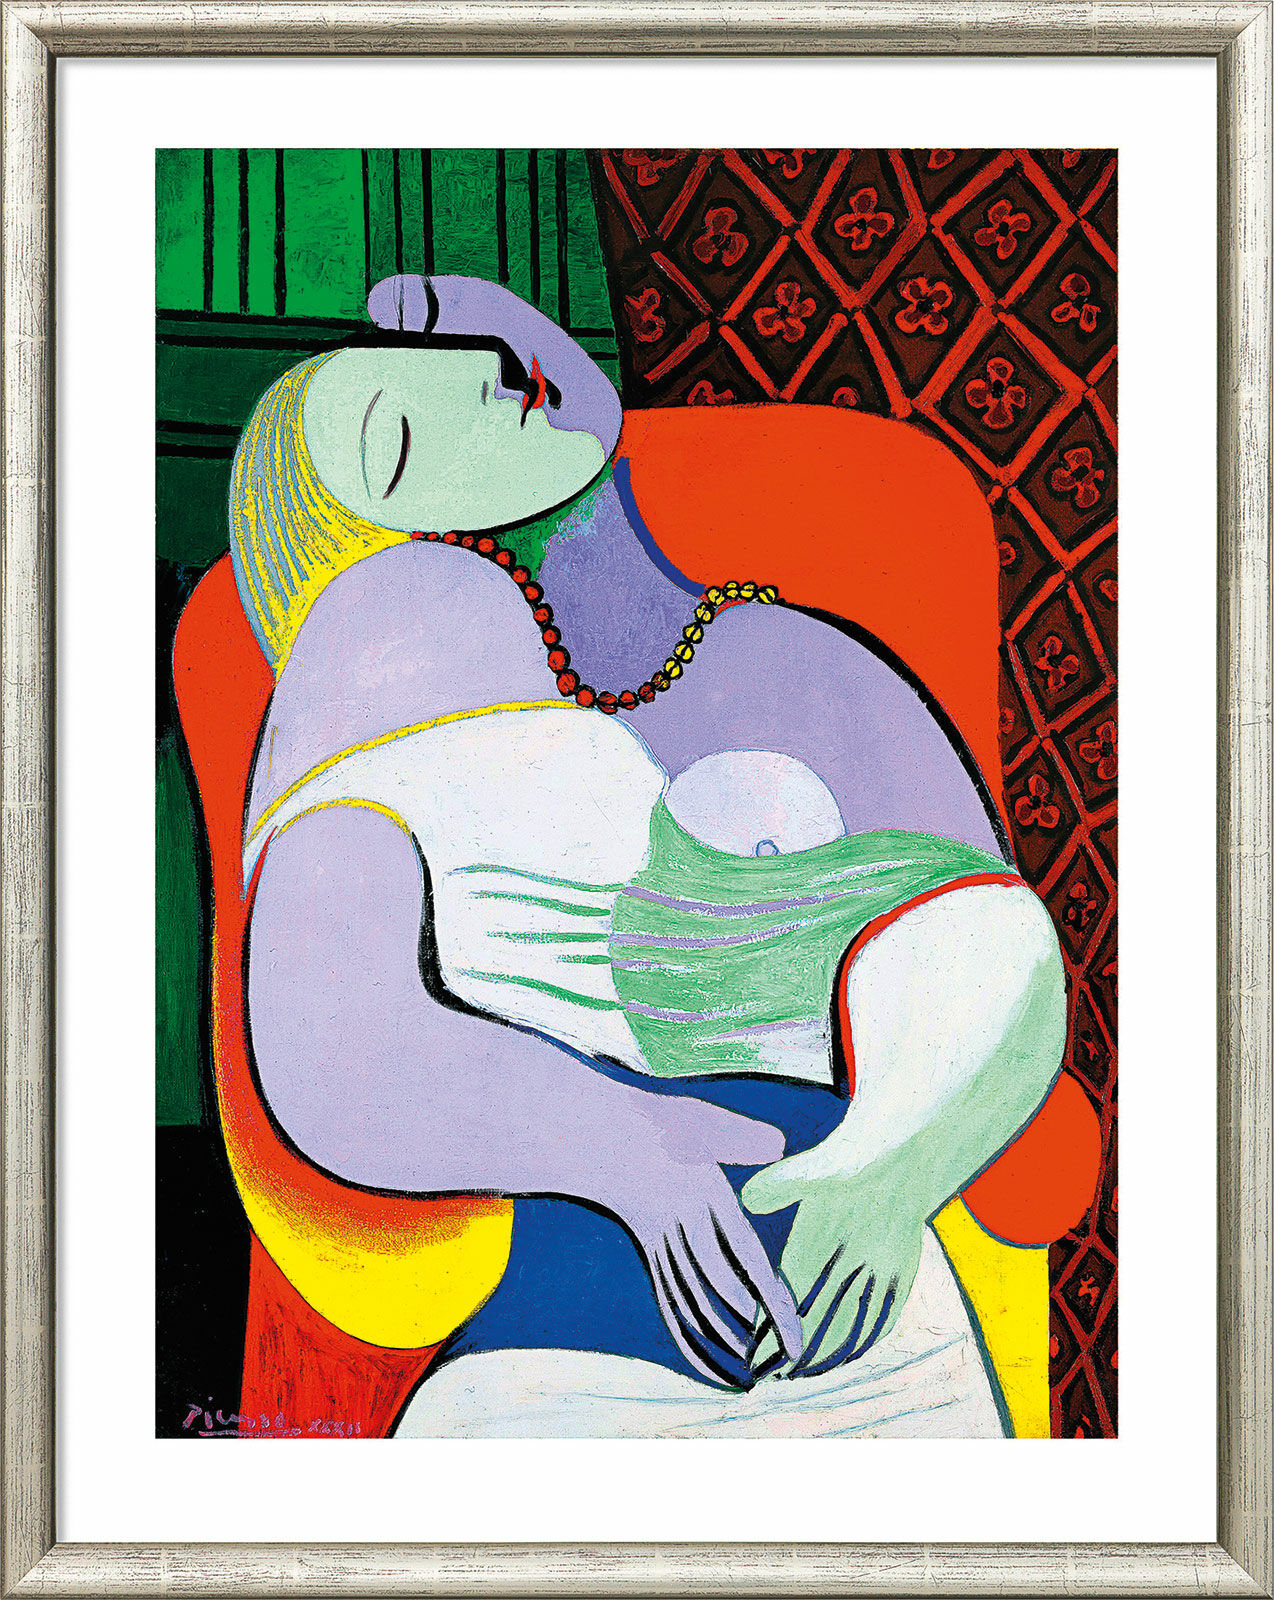 Tableau "Le Rêve" (1932), encadré von Pablo Picasso